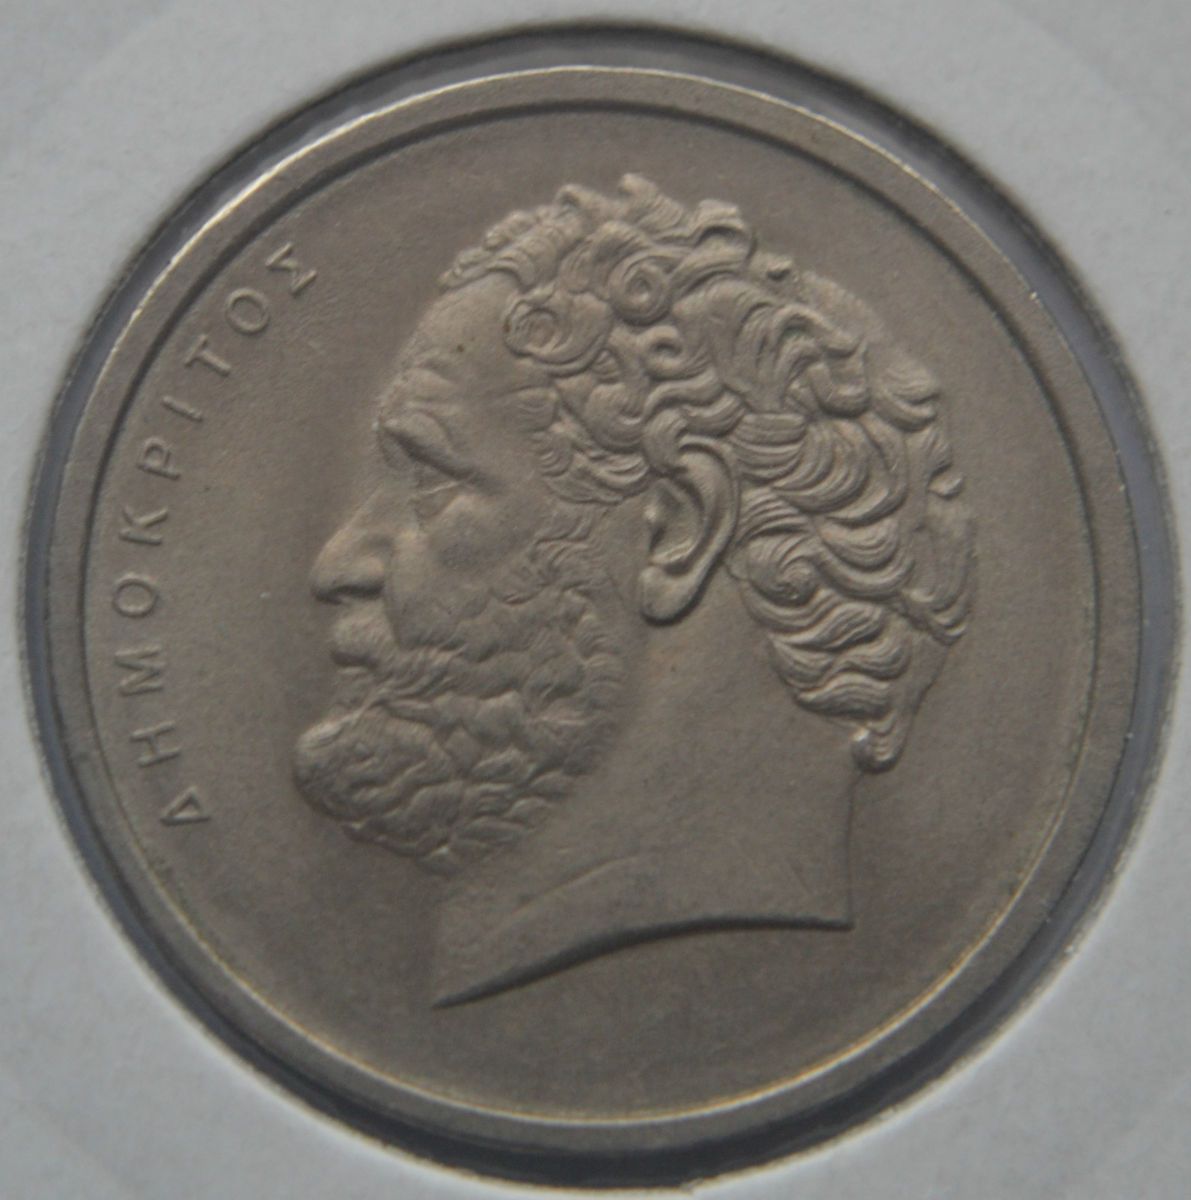  Coin Greece 1978 Drachma 10 Drachmai Democritus Extra Fine Coin